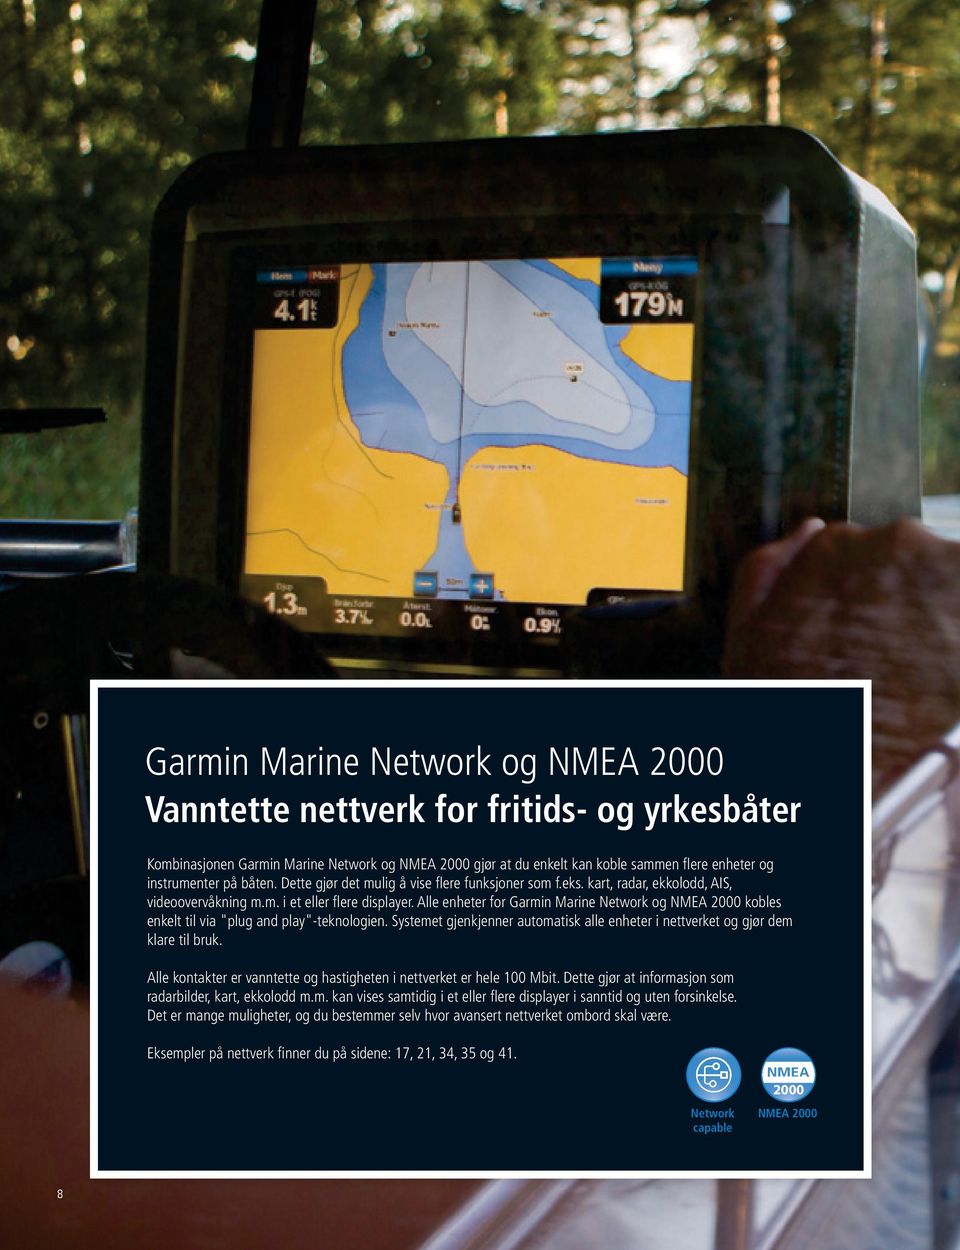 Alle enheter for Garmin Marine Network og NMEA 2000 kobles enkelt til via "plug and play"-teknologien. Systemet gjenkjenner automatisk alle enheter i nettverket og gjør dem klare til bruk.